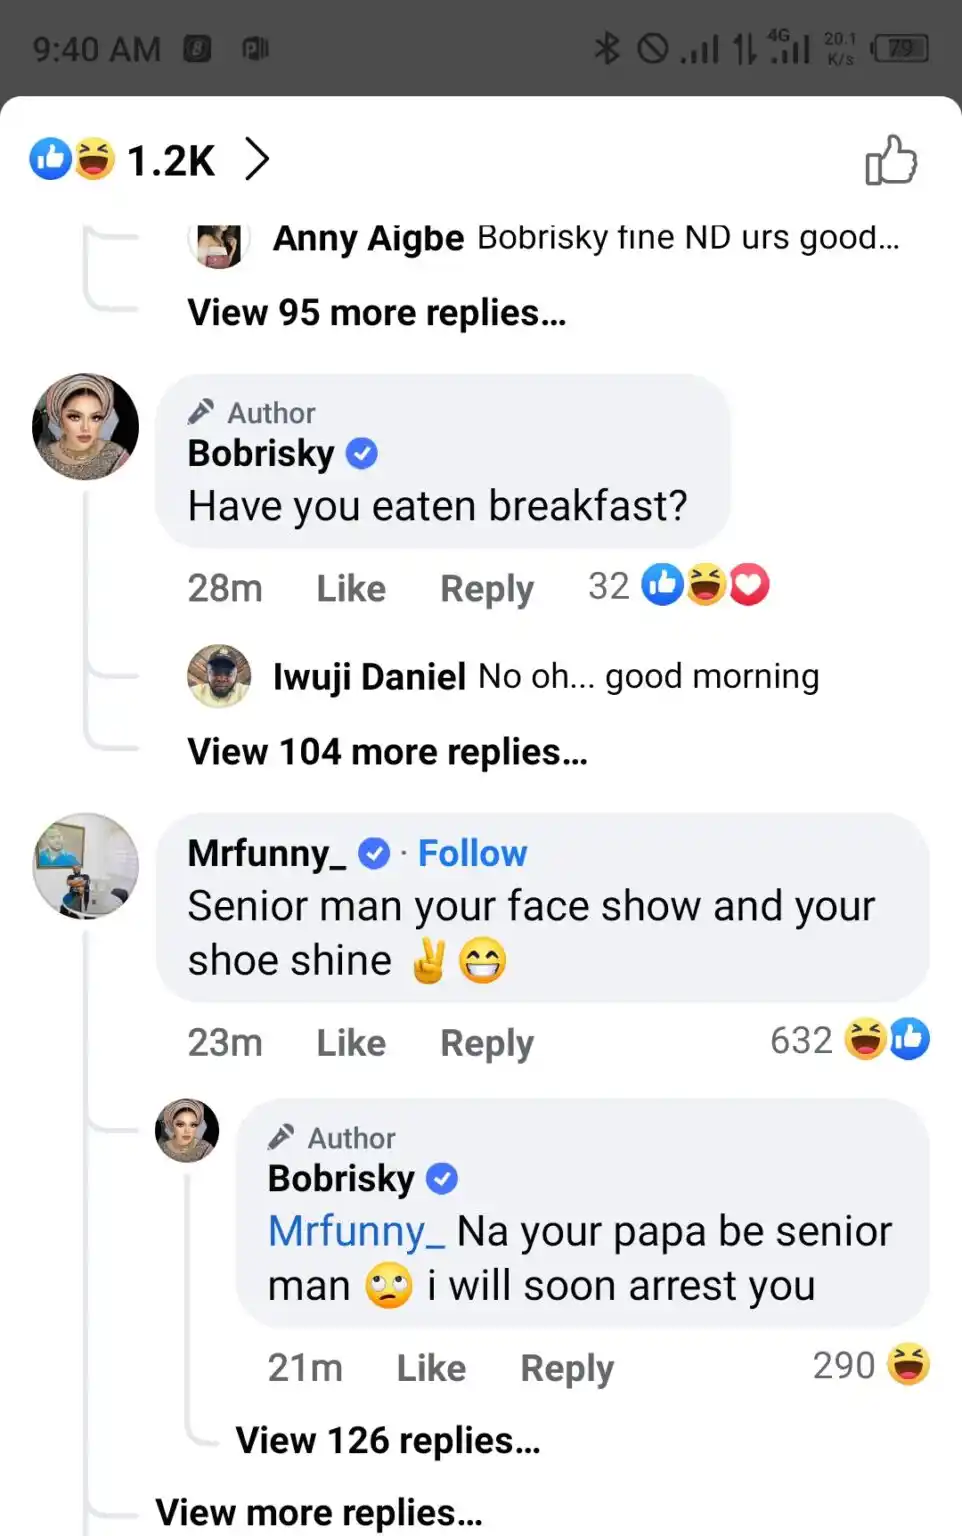 Bobrisky threatens to arrest comedian Mr Funny (Oga Sabinus) for calling her "Senior Man" – See comment exchange